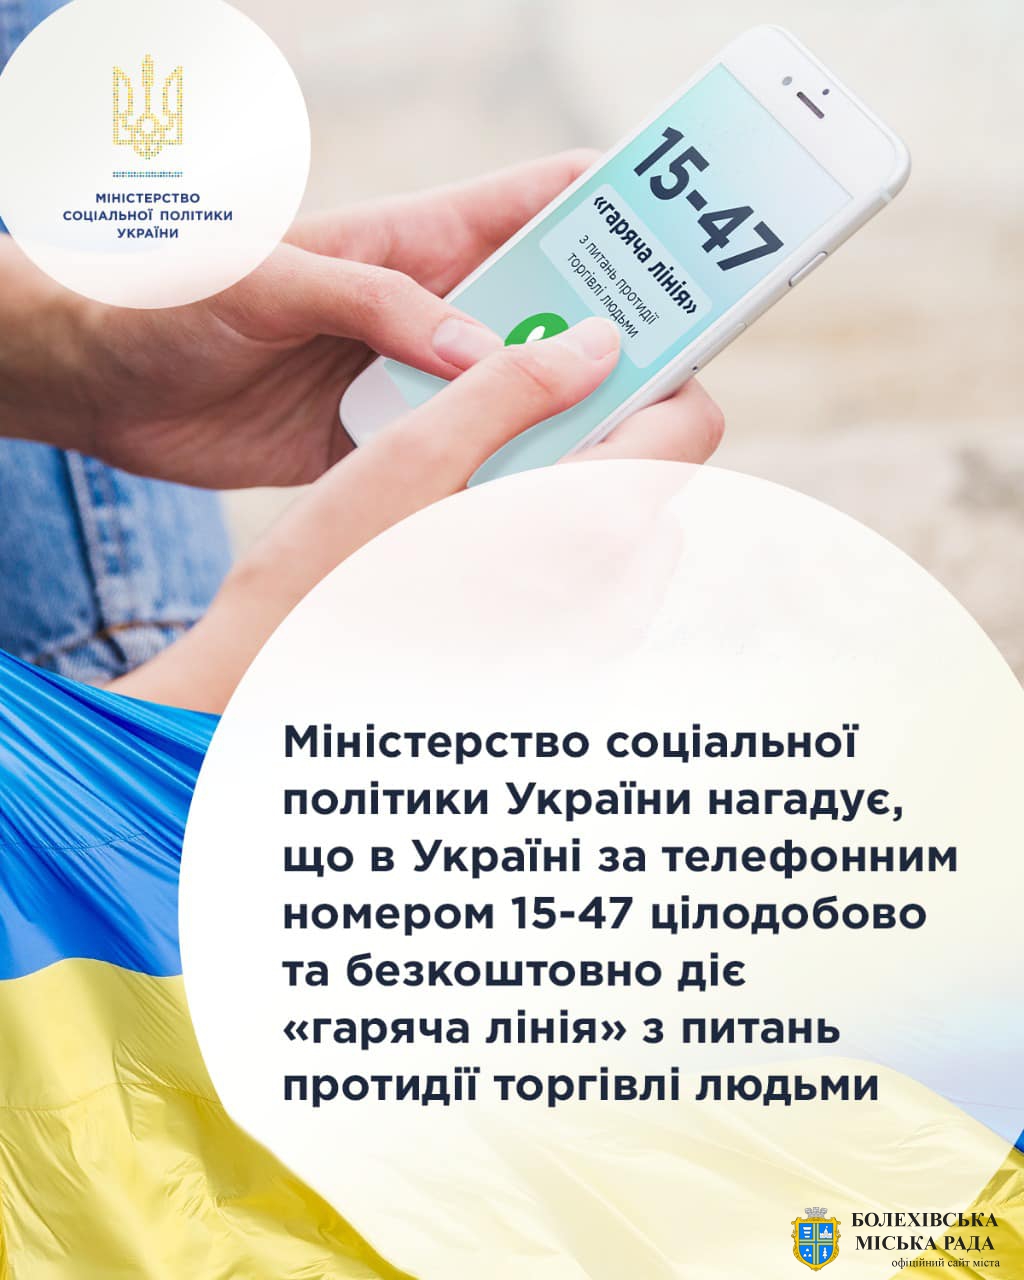 В Україні за телефонним номером 15-47 цілодобово та безкоштовно діє «гаряча лінія» з питань протидії торгівлі людьми